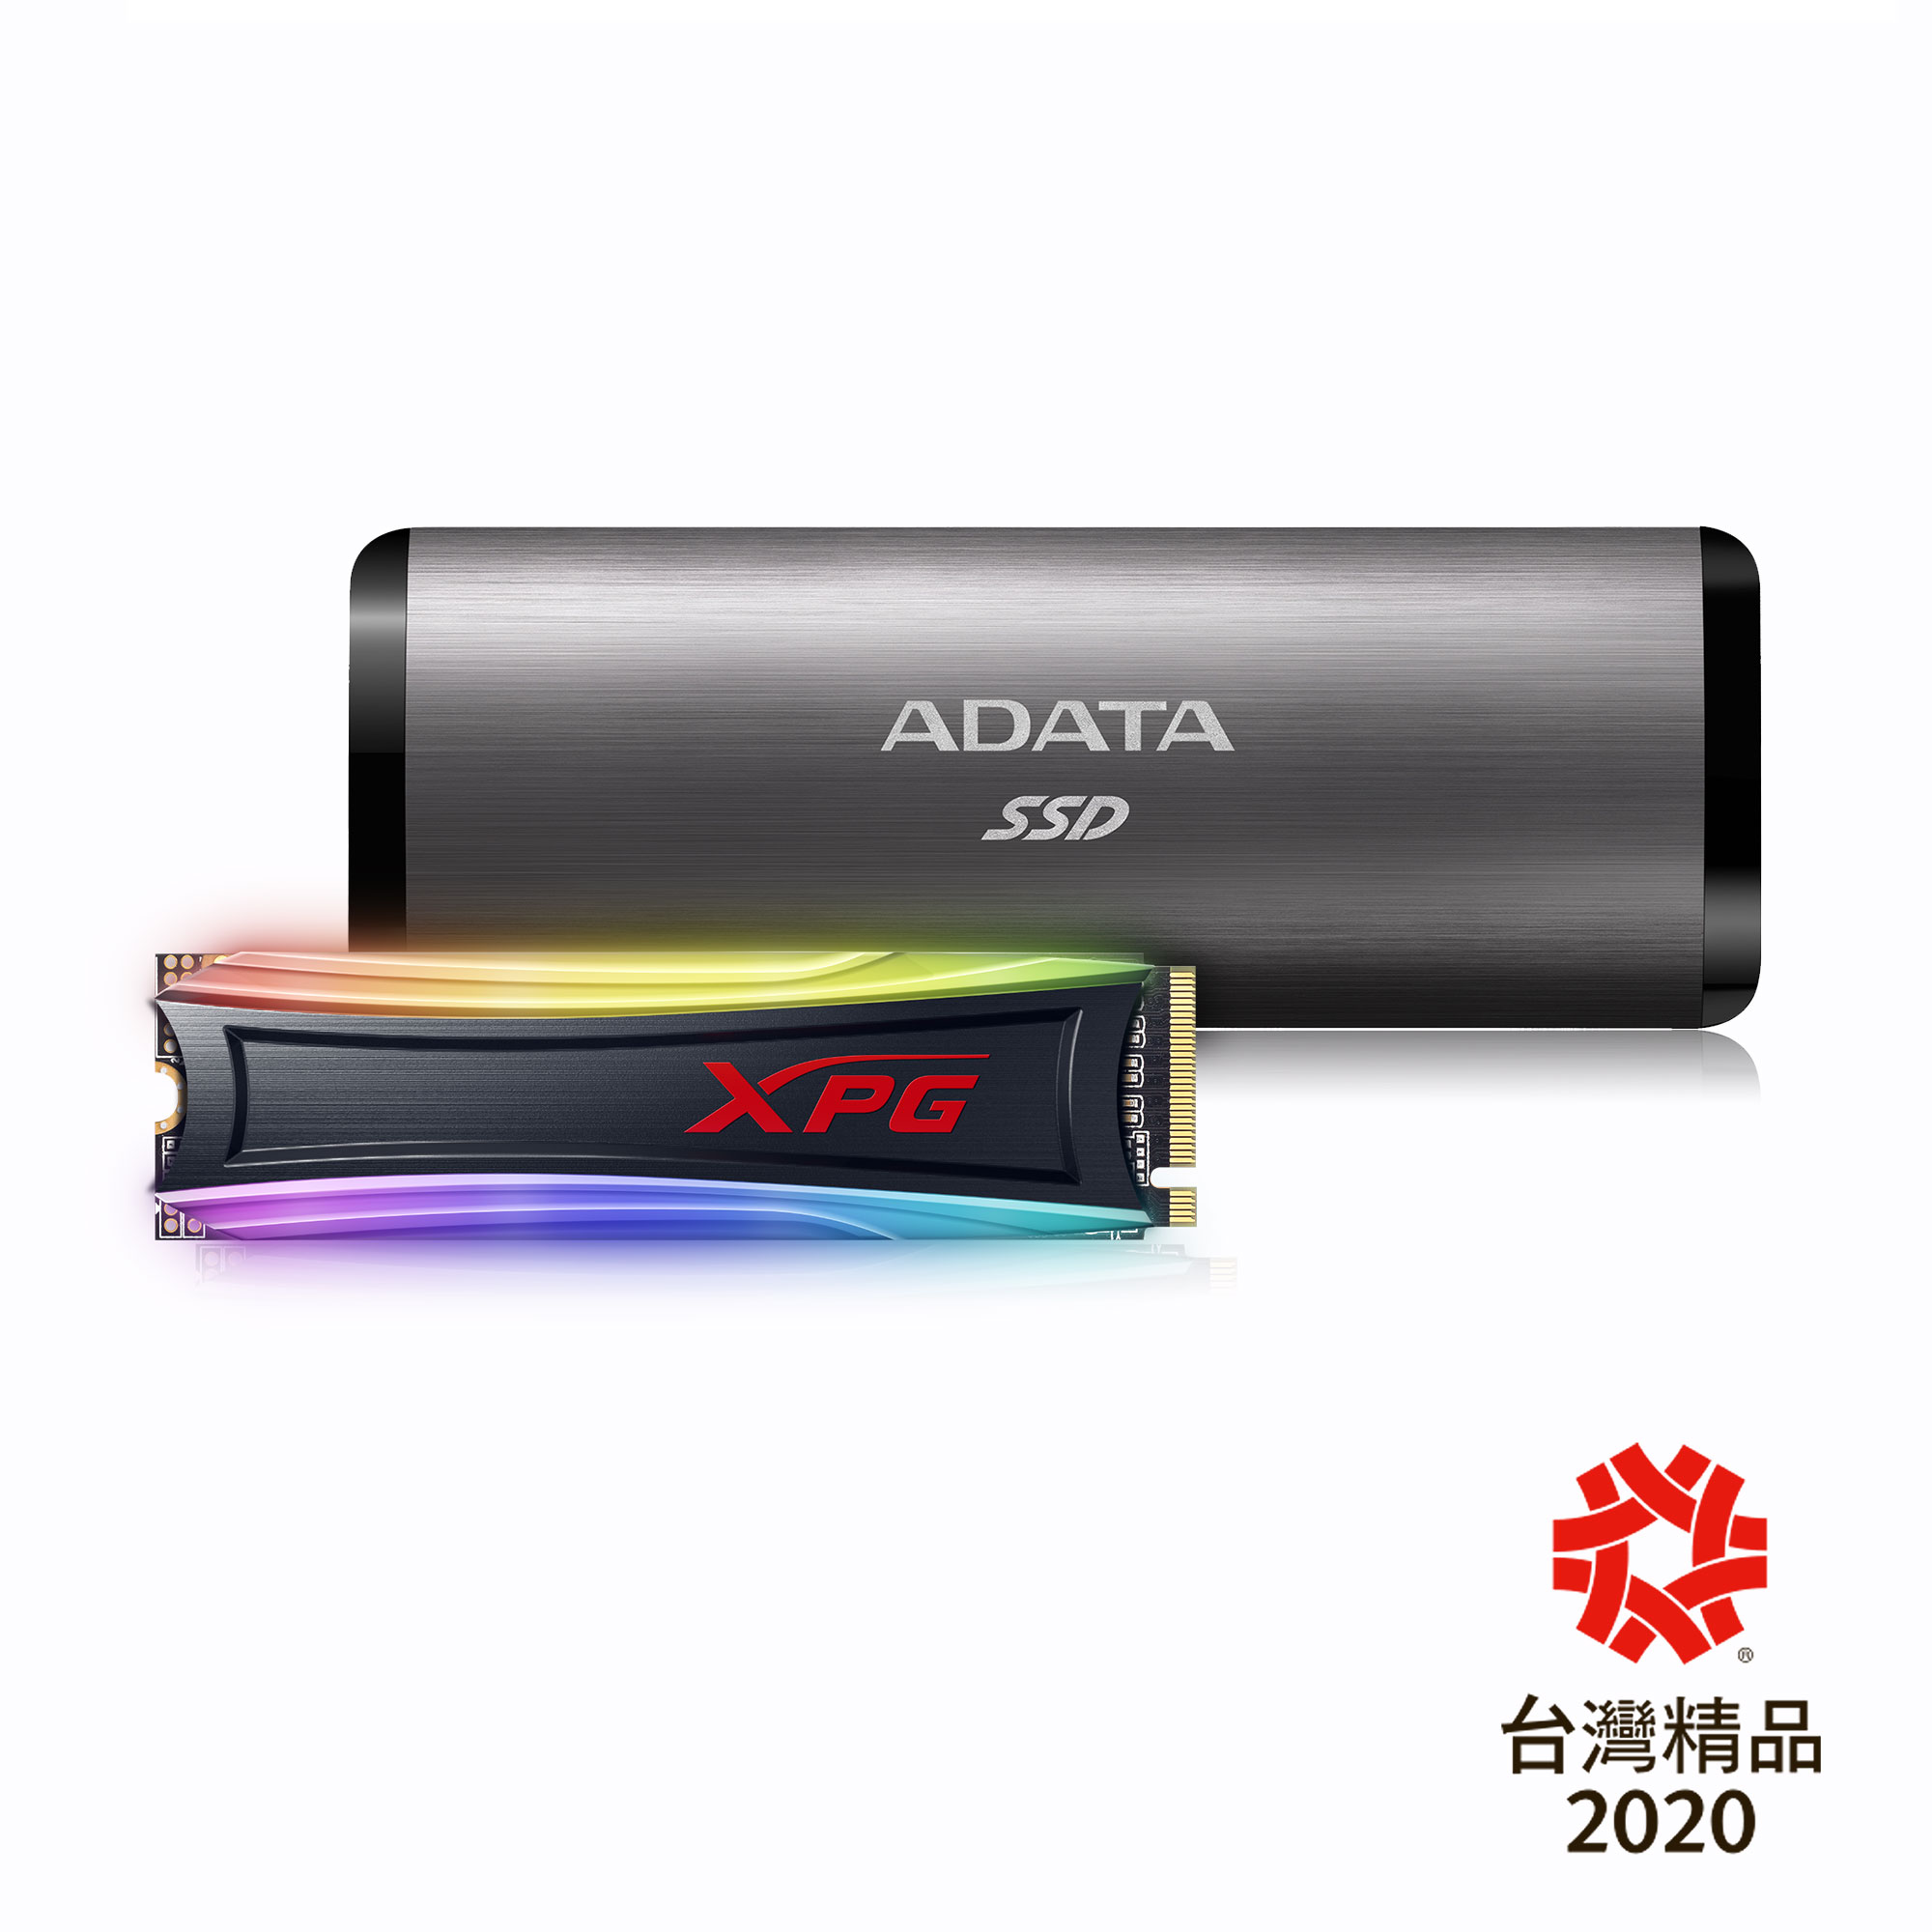 【快訊報報】ADATA 威剛用創新贏得掌聲 RGB電競固態硬碟、外接式固態硬碟 榮獲台灣精品肯定 - 外接式固態硬碟 - 科技狗 3C DOG